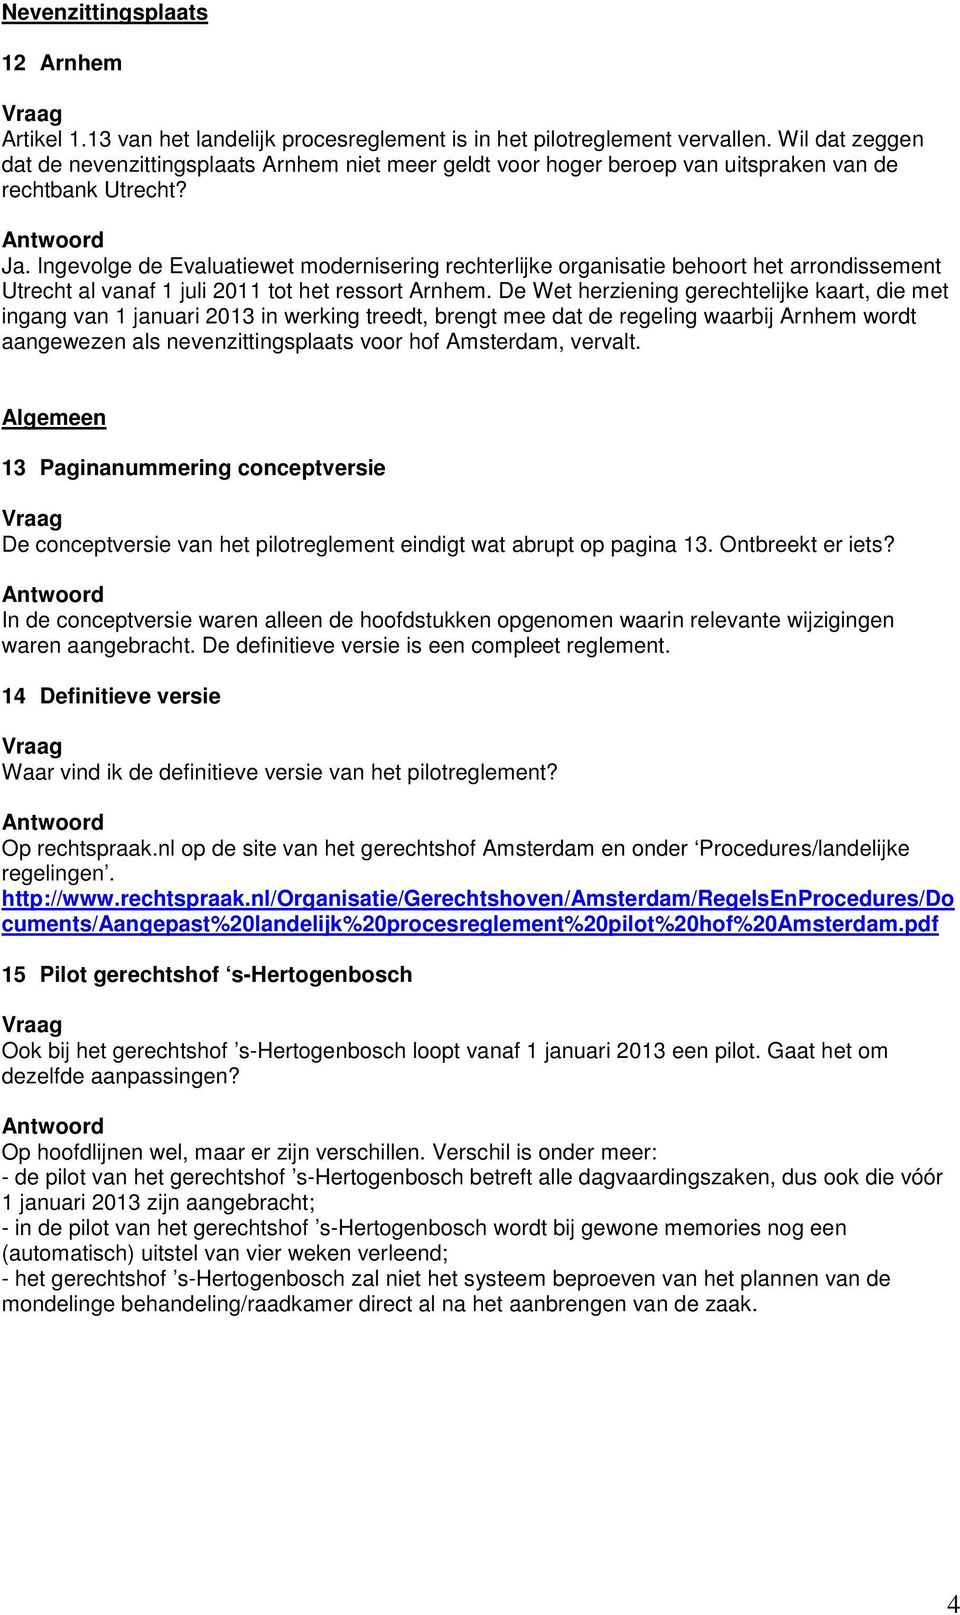 Ingevolge de Evaluatiewet modernisering rechterlijke organisatie behoort het arrondissement Utrecht al vanaf 1 juli 2011 tot het ressort Arnhem.